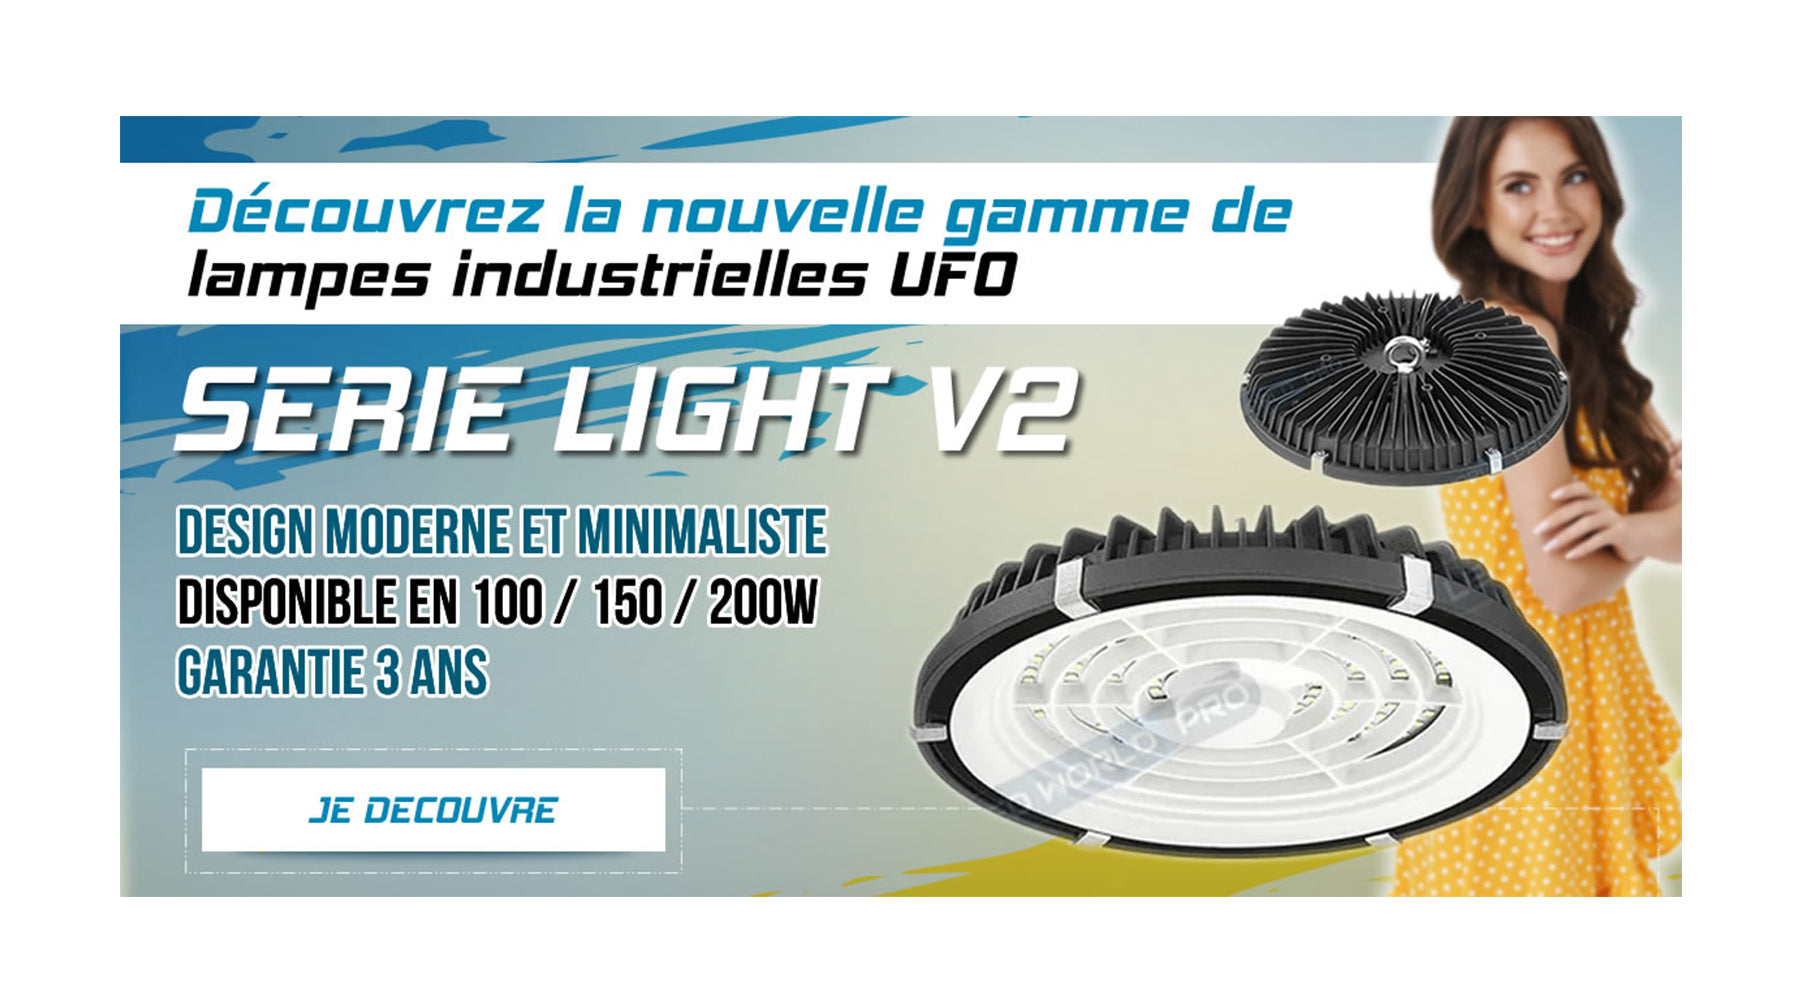 [NOUVEAU] Lampe industrielle UFO - Série LIGHT V2